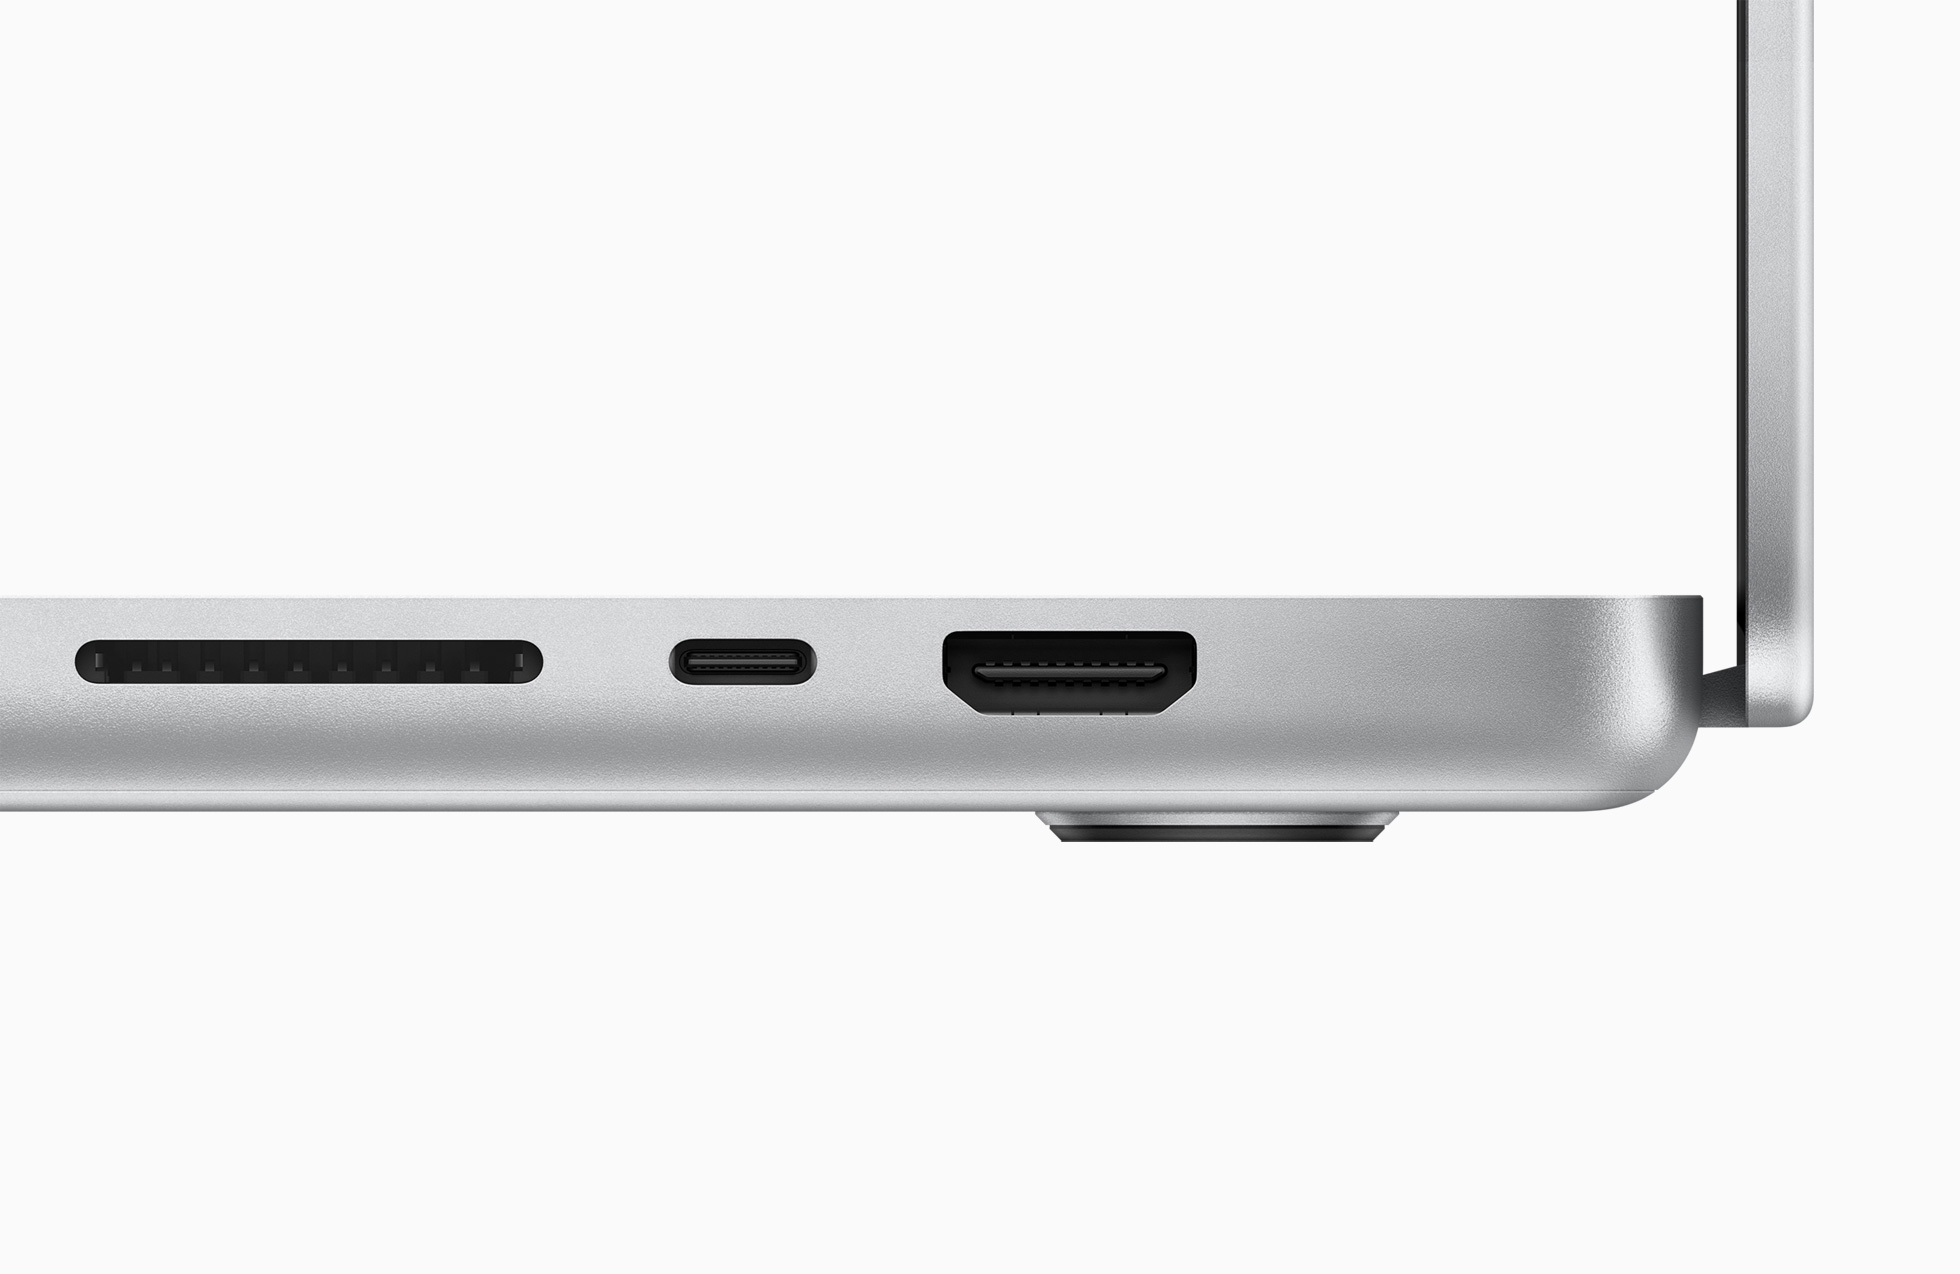 Apple представила новые MacBook Pro: 14 и 16 дюймов, M1 Pro и M1 Max, вернувшийся MagSafe, 120 Гц и… вырез в экране